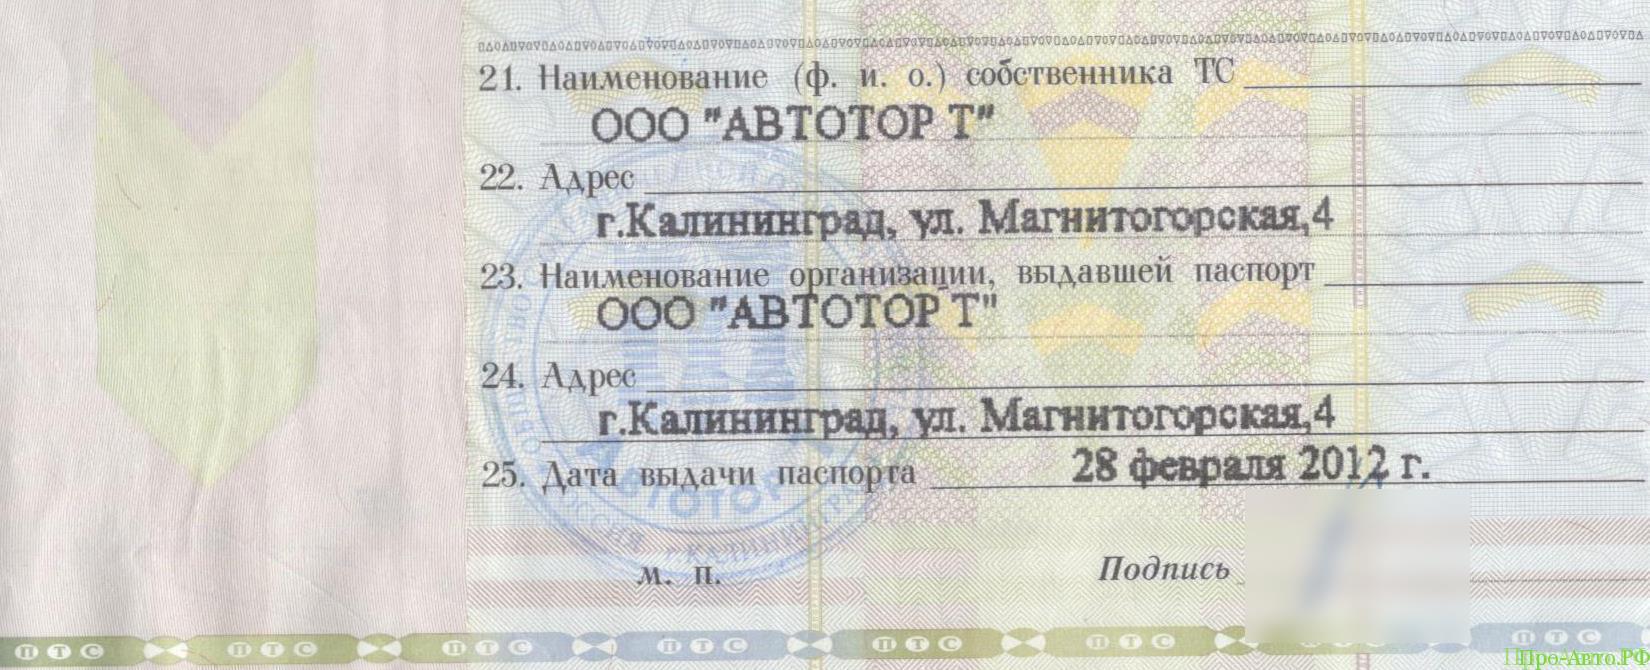 Паспорт ТС выдан